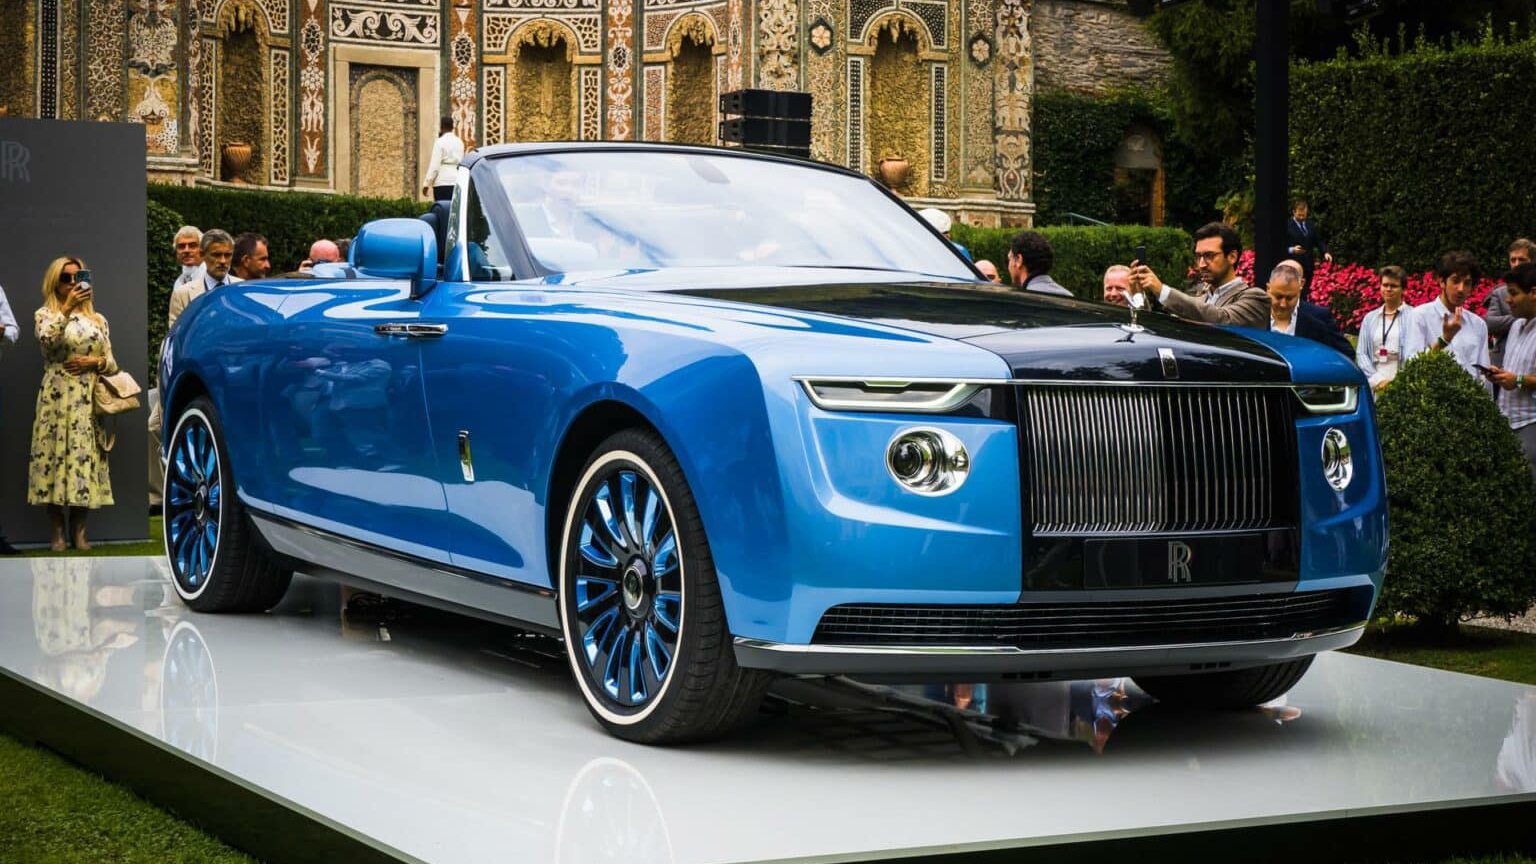 Ngẩn ngơ trước vẻ đẹp ngoài đời thực của Rolls-Royce Boat Tail giá 28 triệu USD